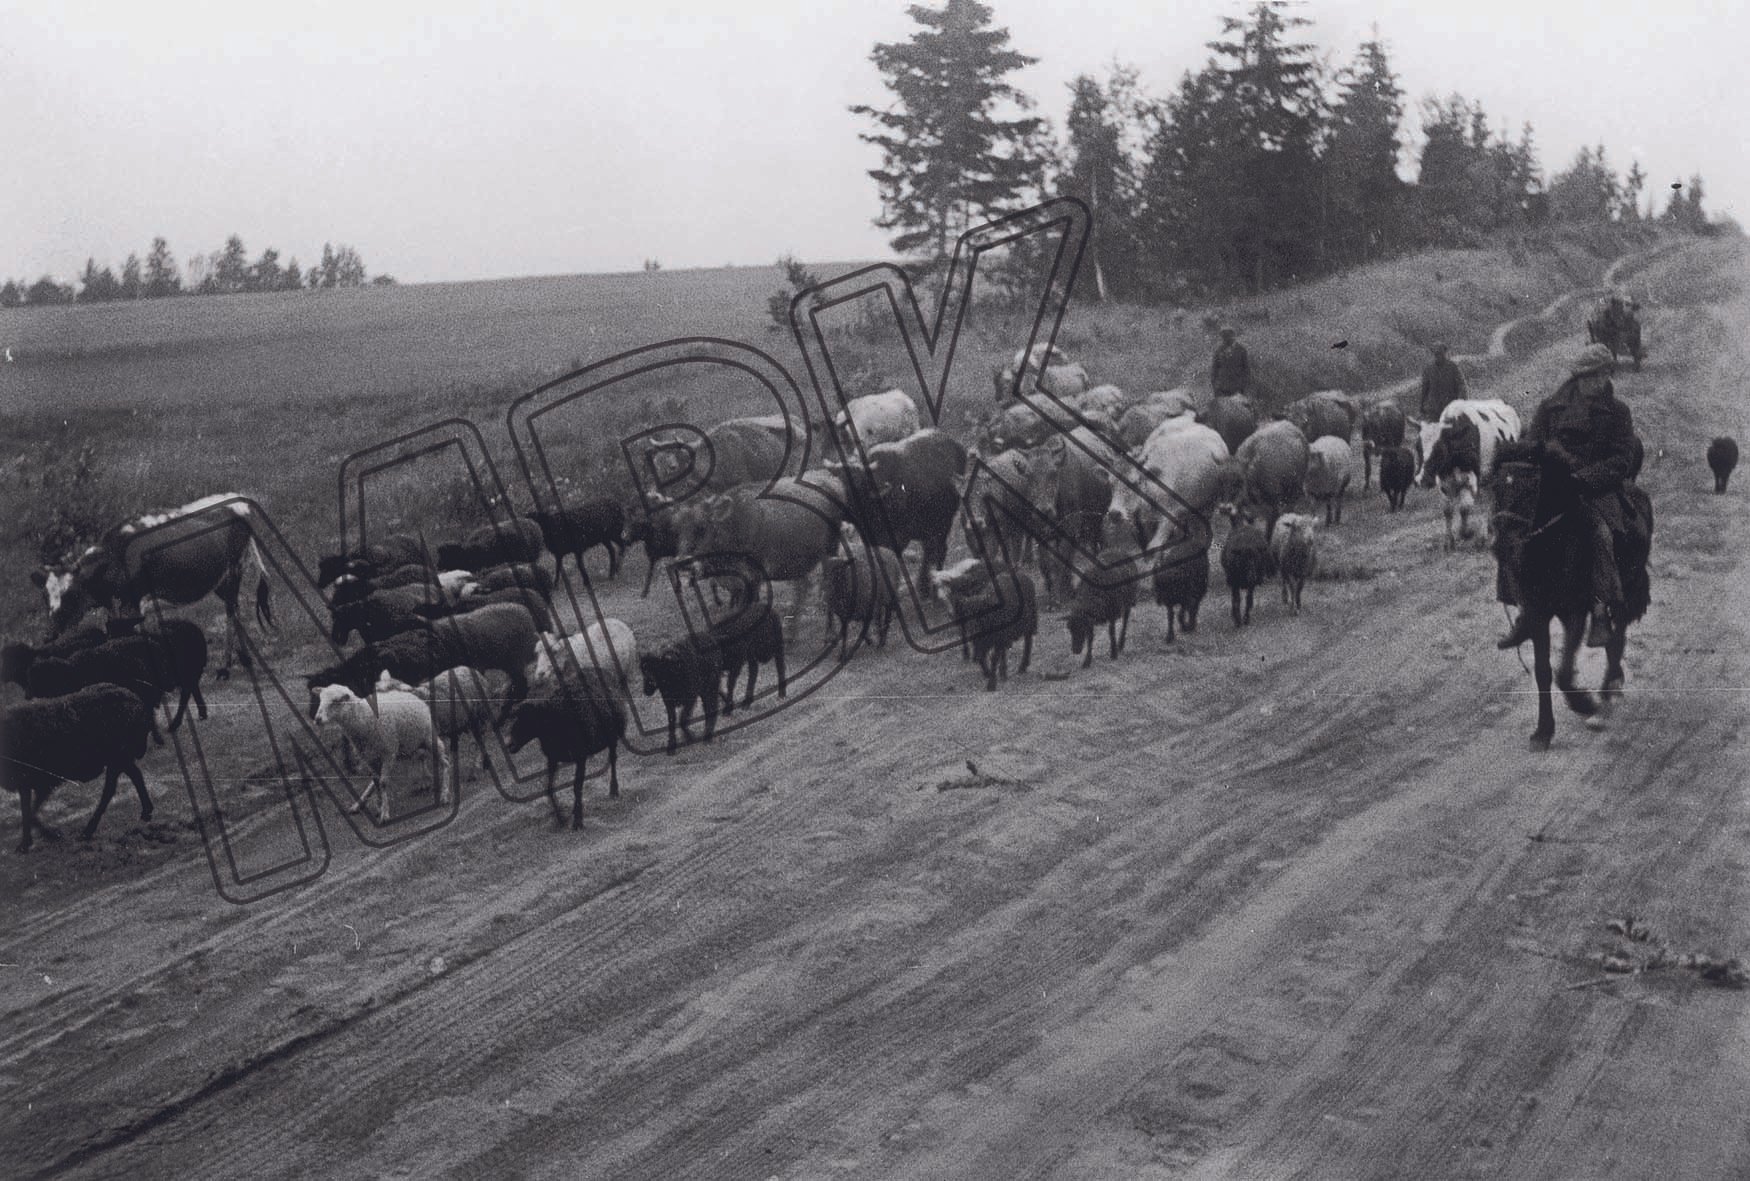 Fotografie: Bauern evakuieren Vieh vor der heranrückenden Front, Gebiet Smolensk, Juli 1941 (Museum Berlin-Karlshorst RR-P)